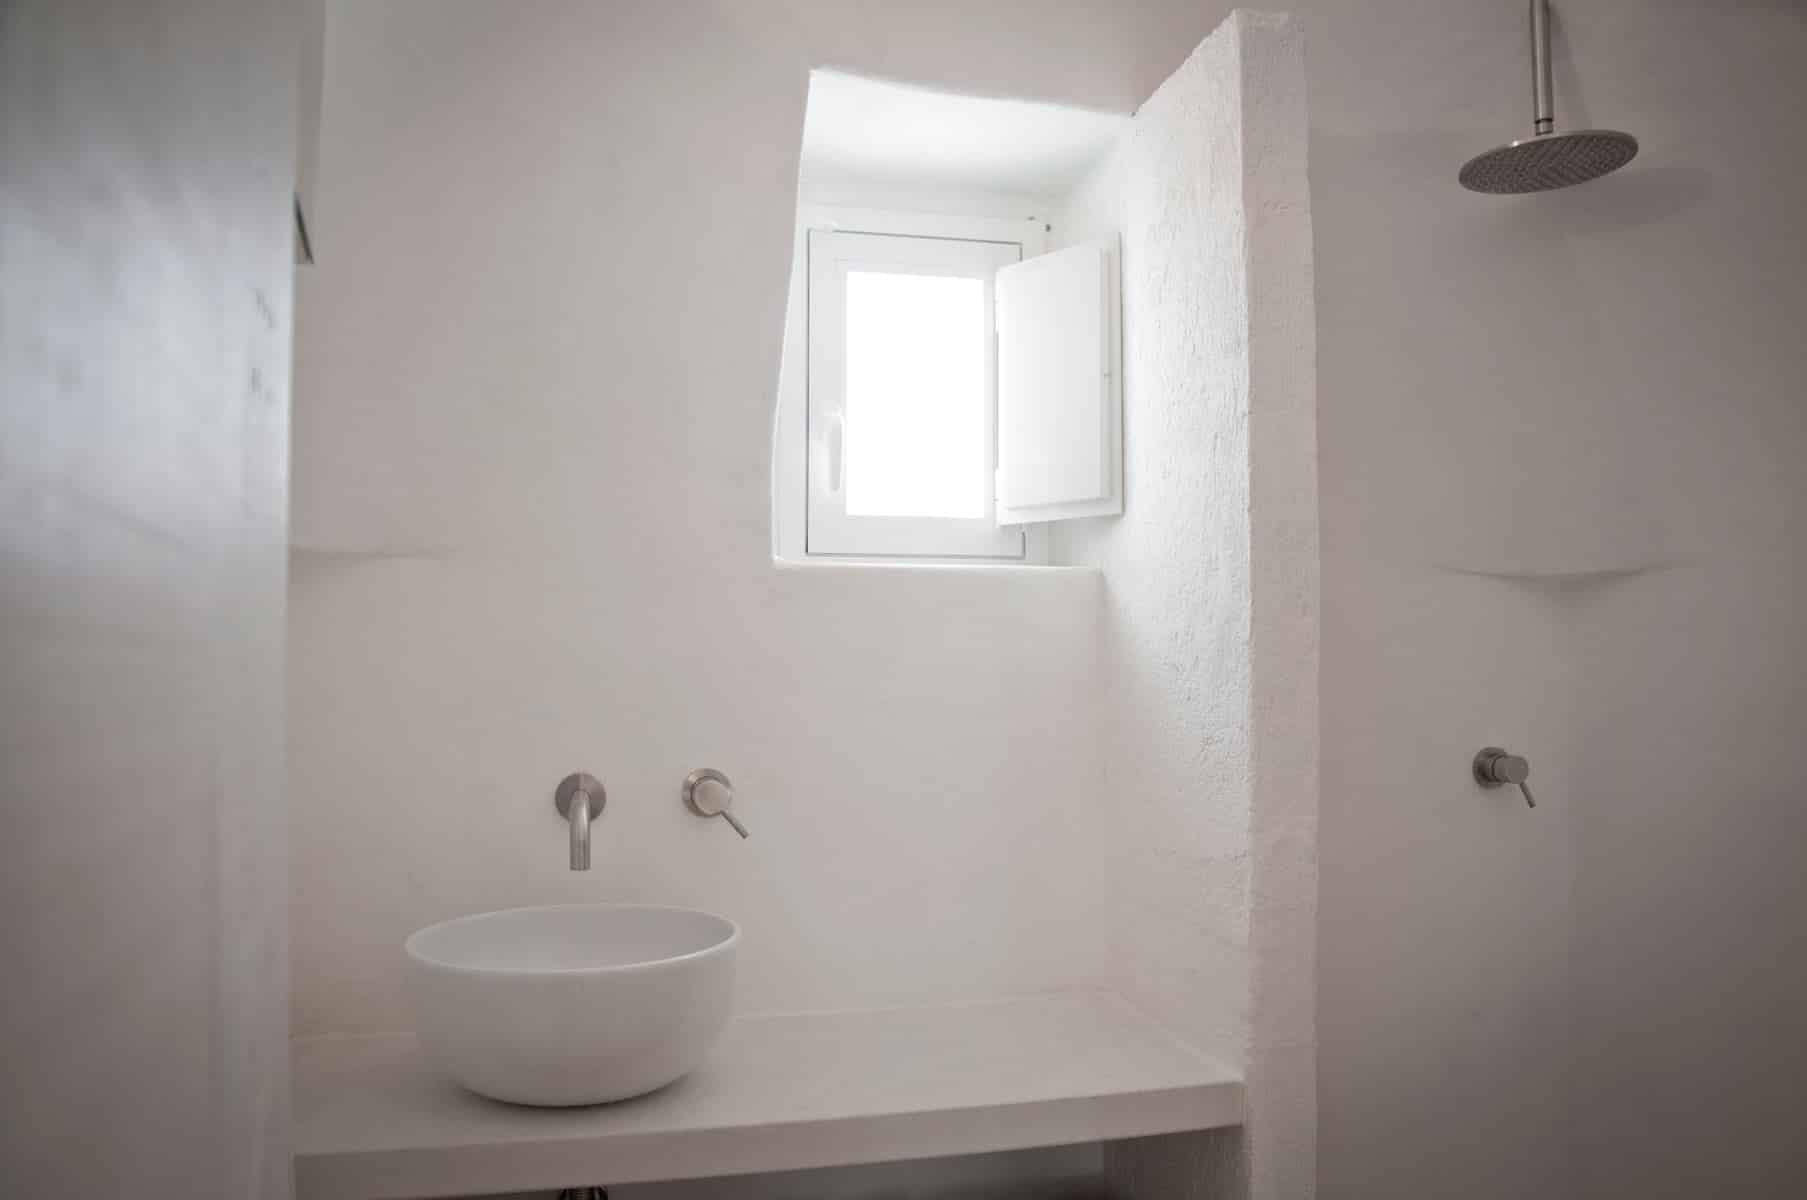 Bathroom in a restored trullo in Puglia